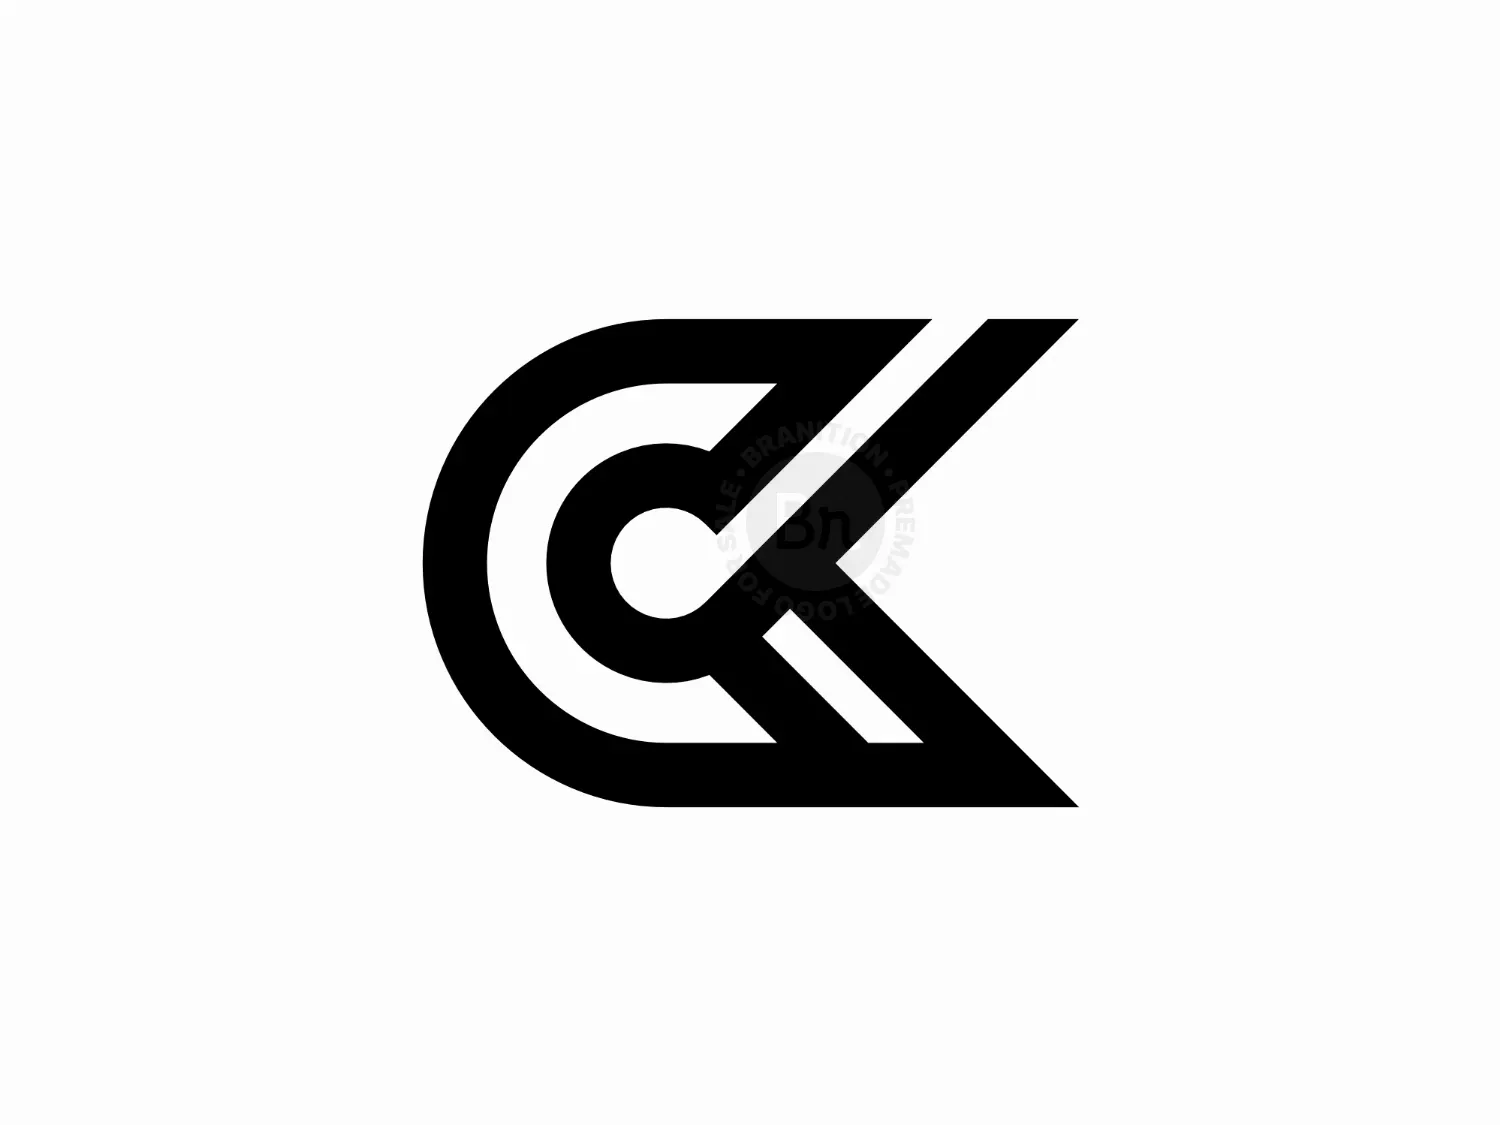 Ck Logo PNG Vectors Free Download